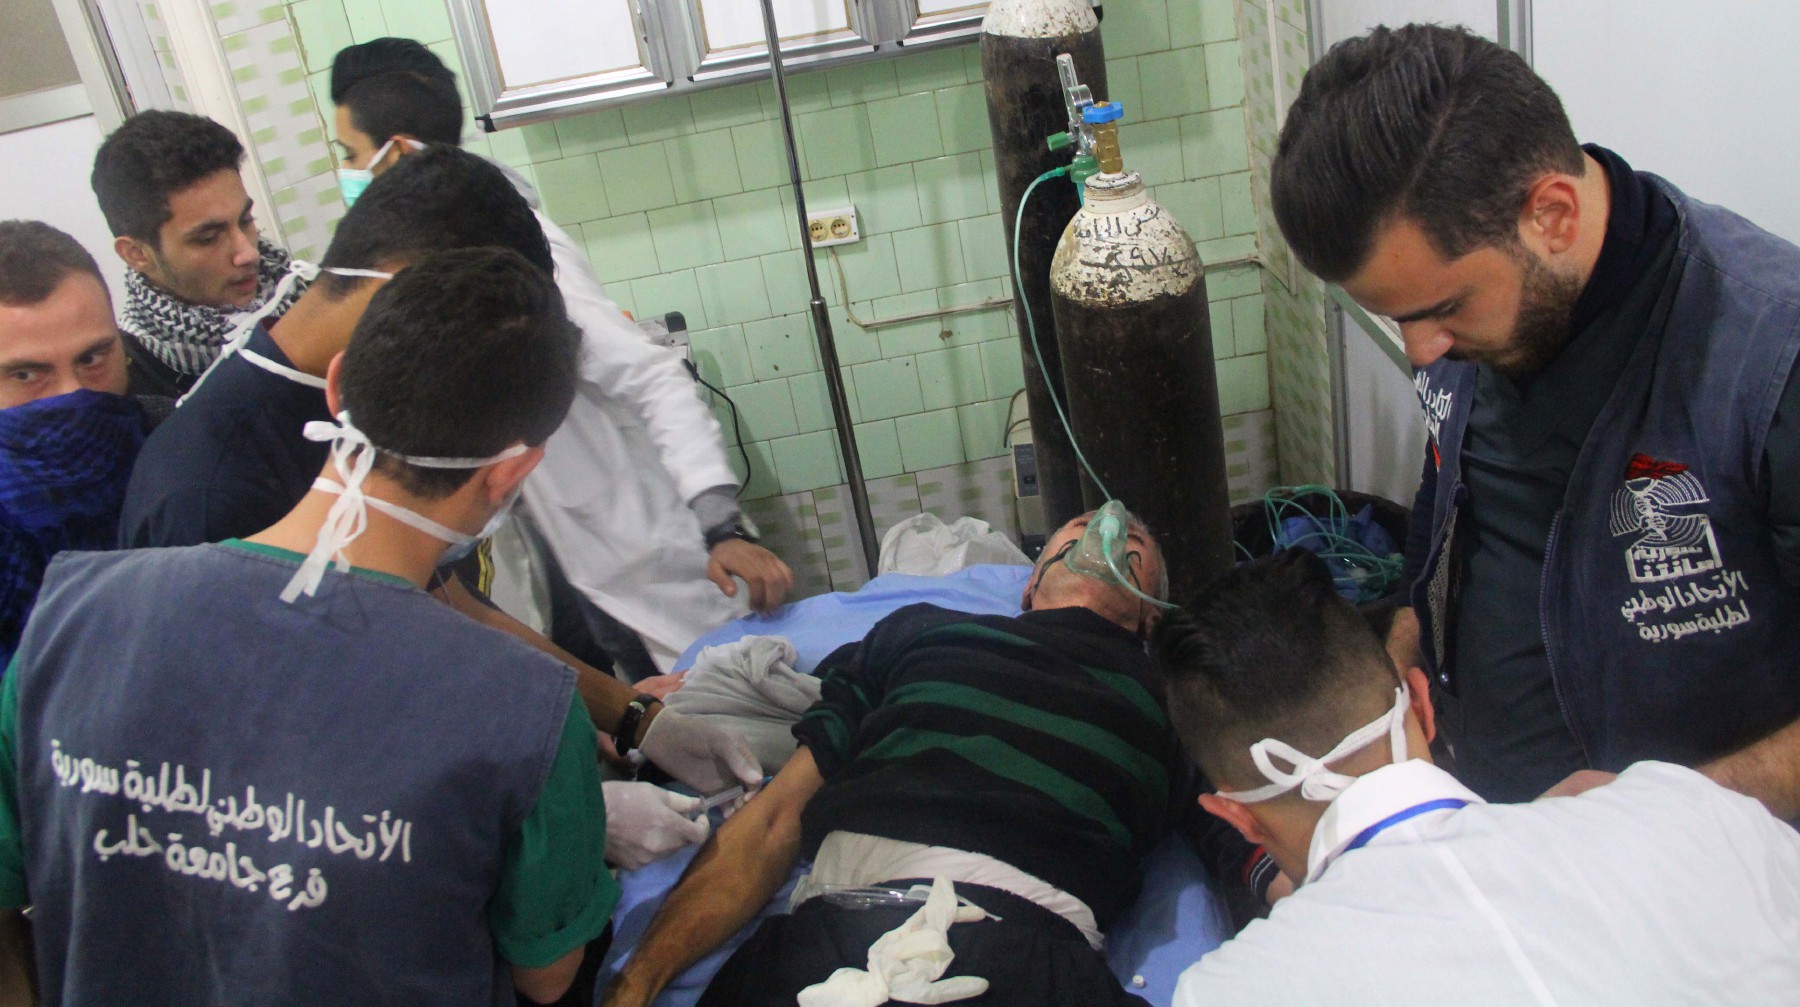 Dailystorm - В Алеппо более 100 человек пострадали от атаки с применением химического оружия